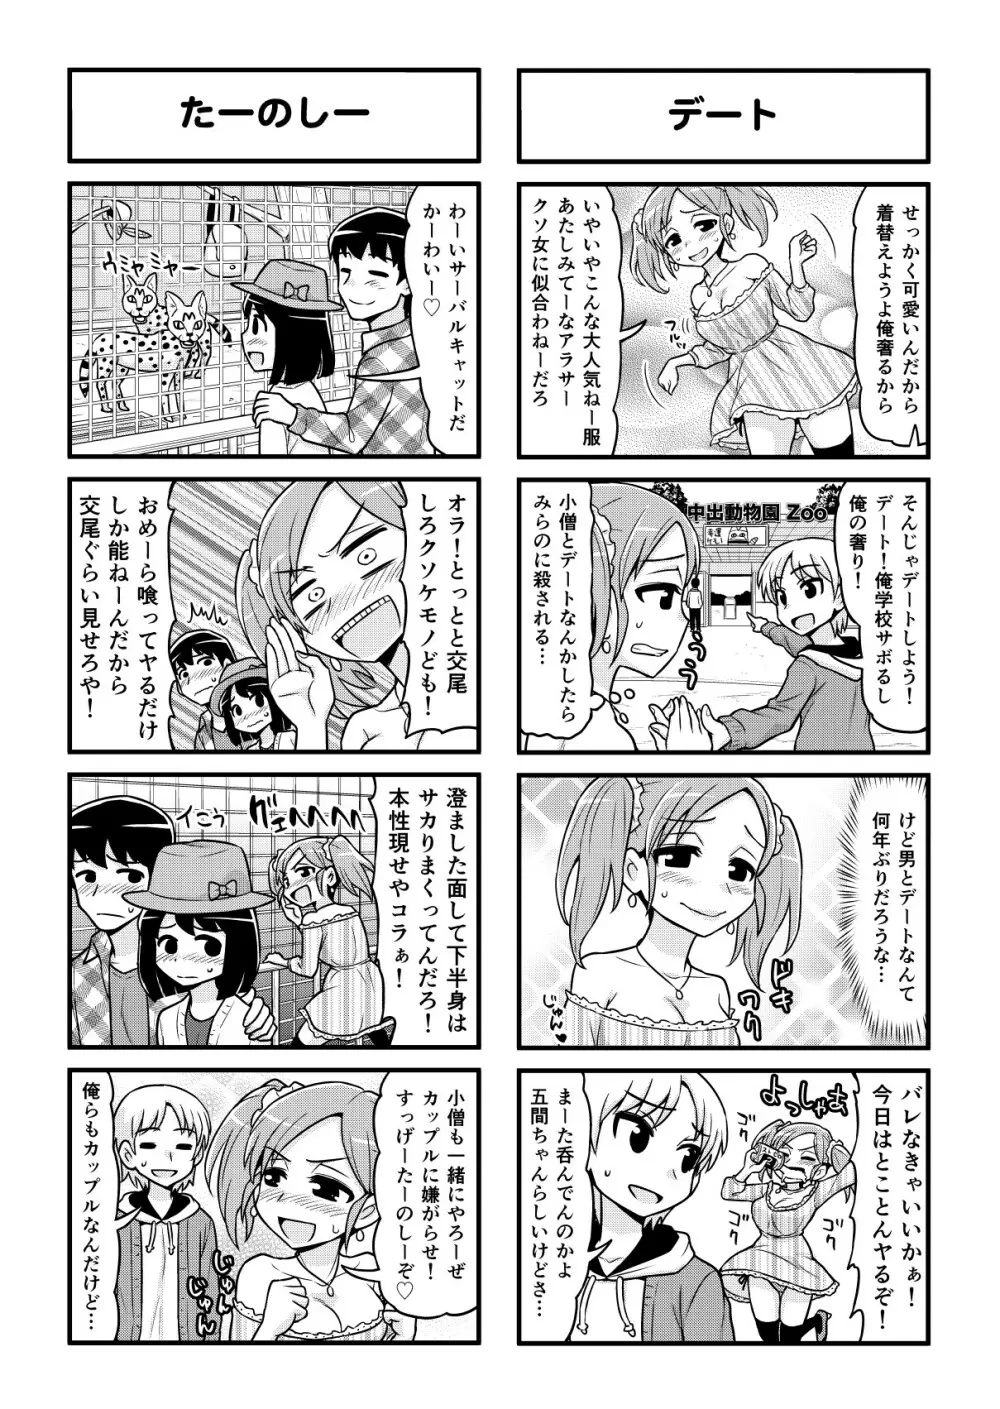 のんきBOY 1-48 - page346